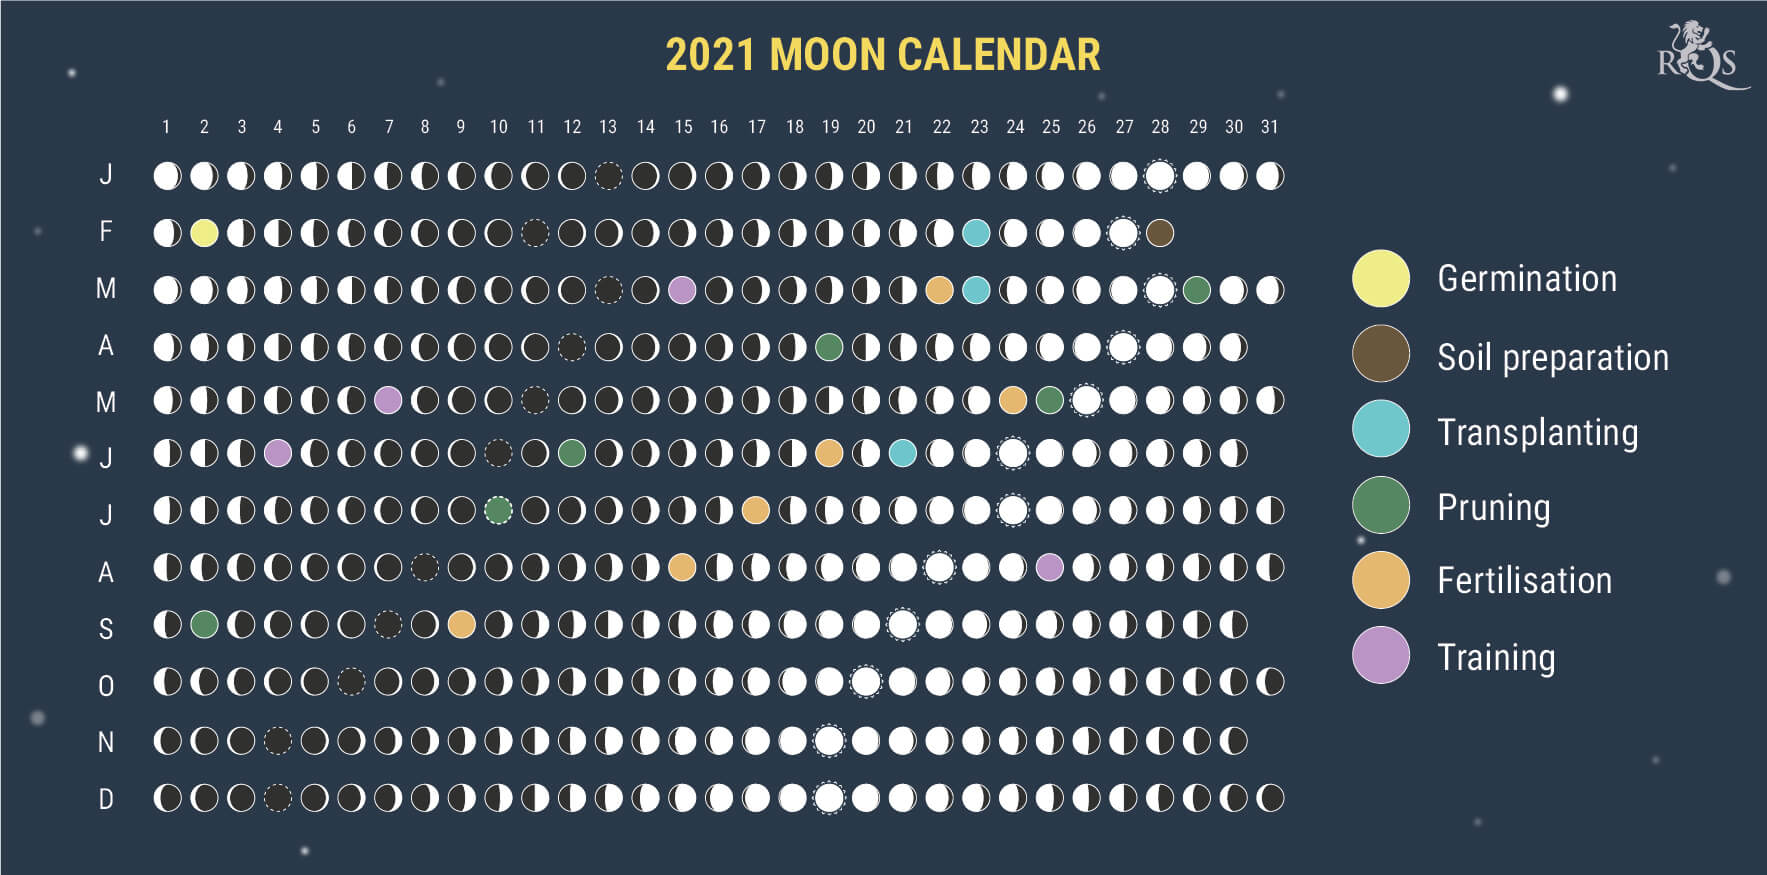 Jak korzystać z kalendarza księżycowego 2021 w okresie fazy wegetacji